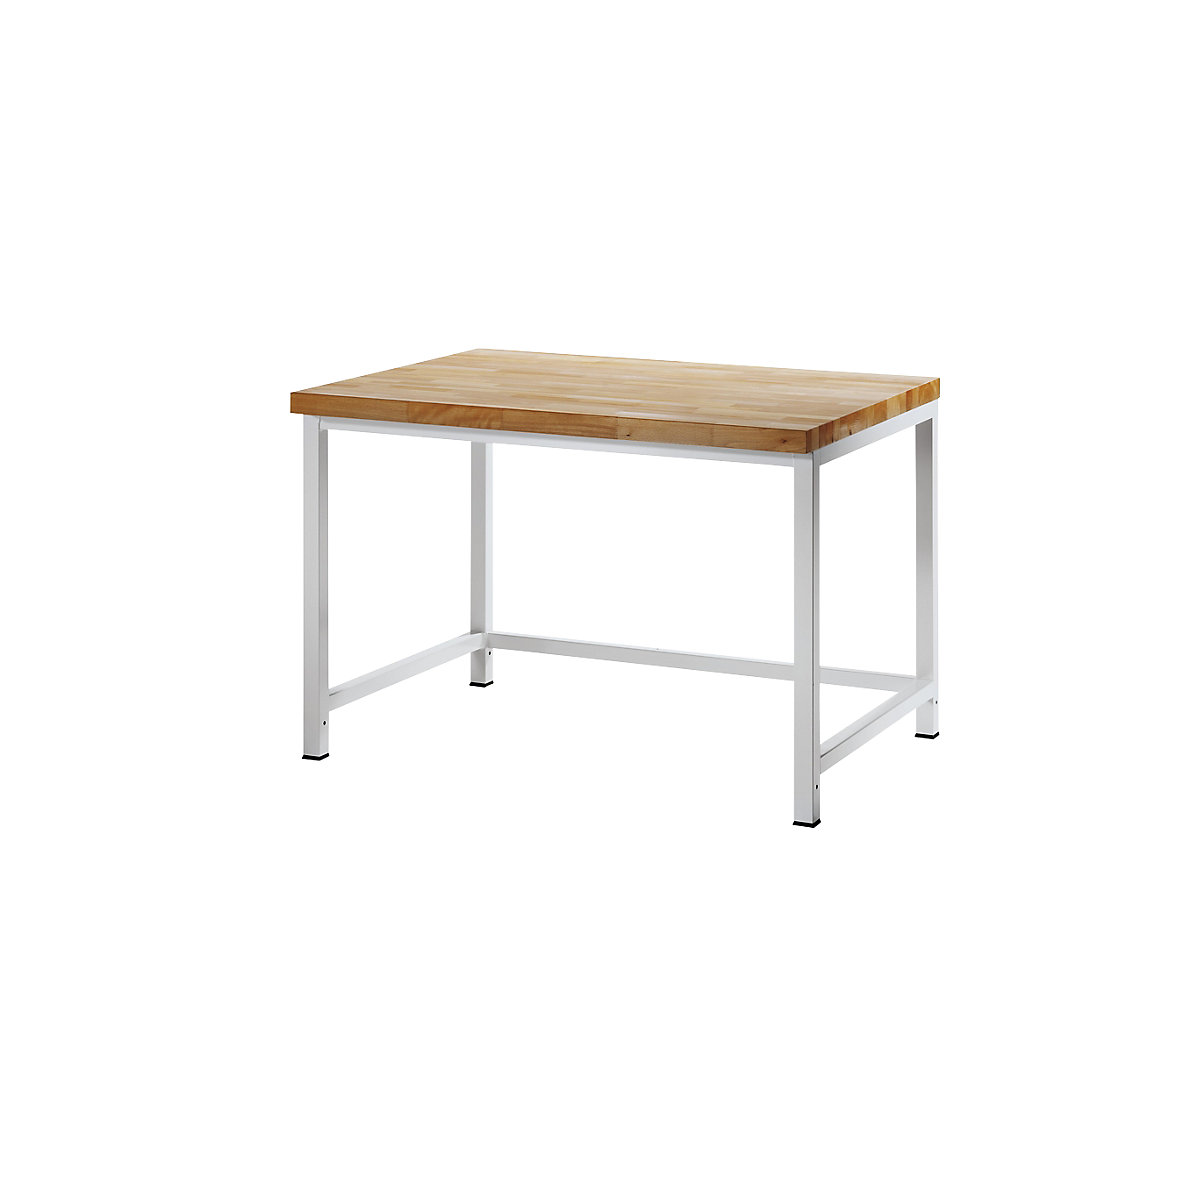 Dílenský stůl s rámovou konstrukcí – RAU, 1 příčná výztuha, hloubka 900 mm, šířka 1250 mm-8